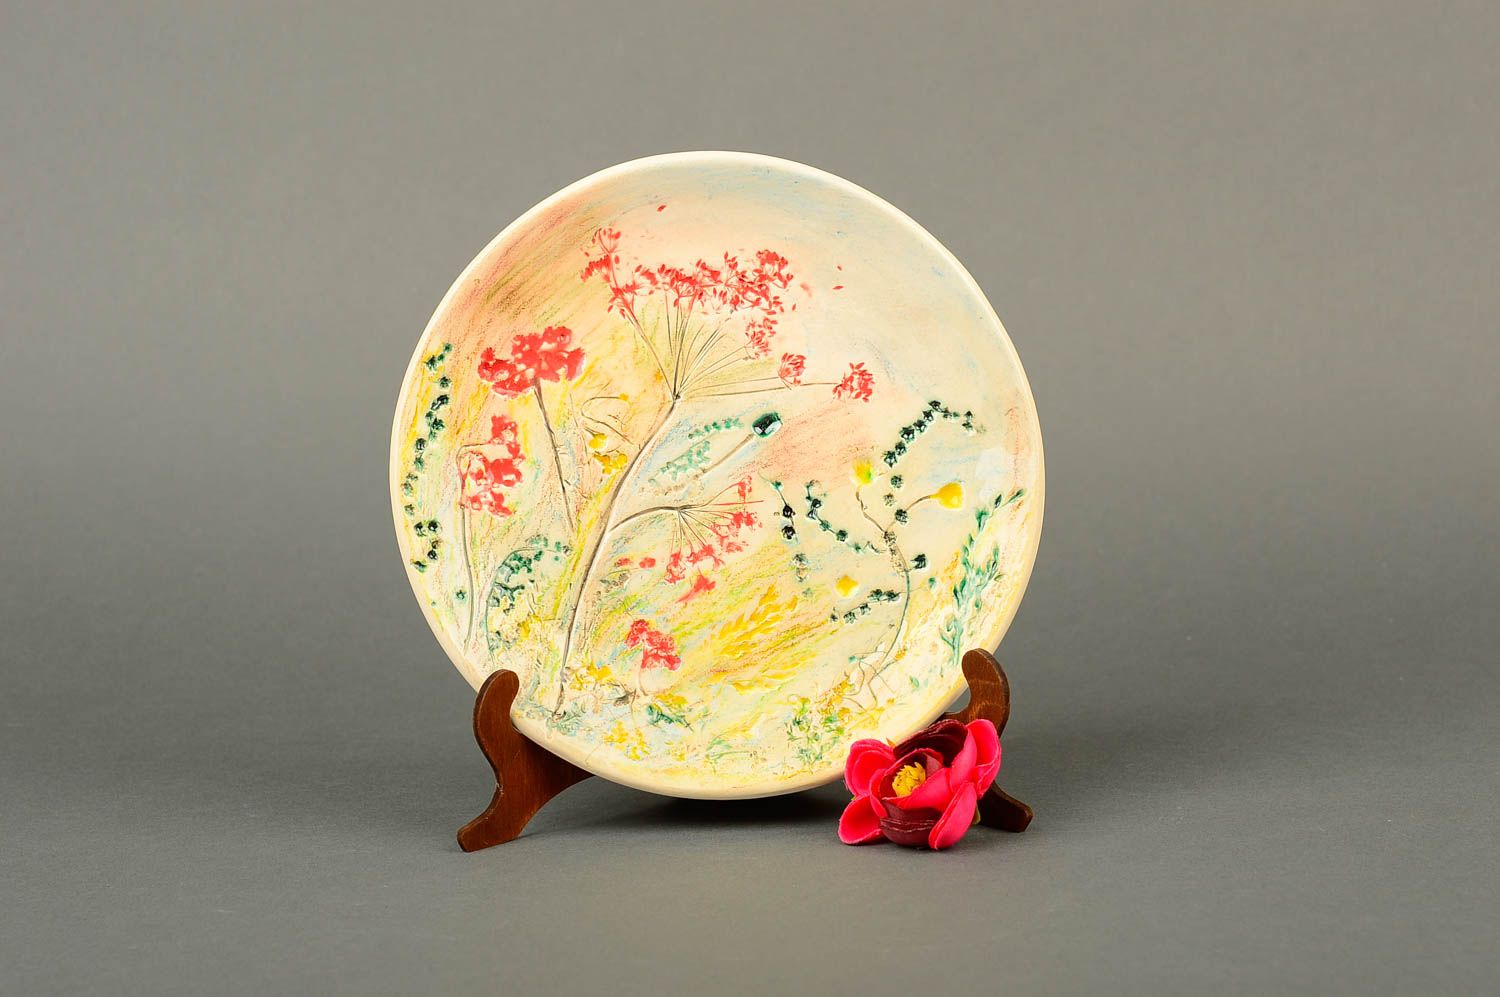 Plato de cerámica artesanal utensilio de cocina decorado menaje del hogar foto 1